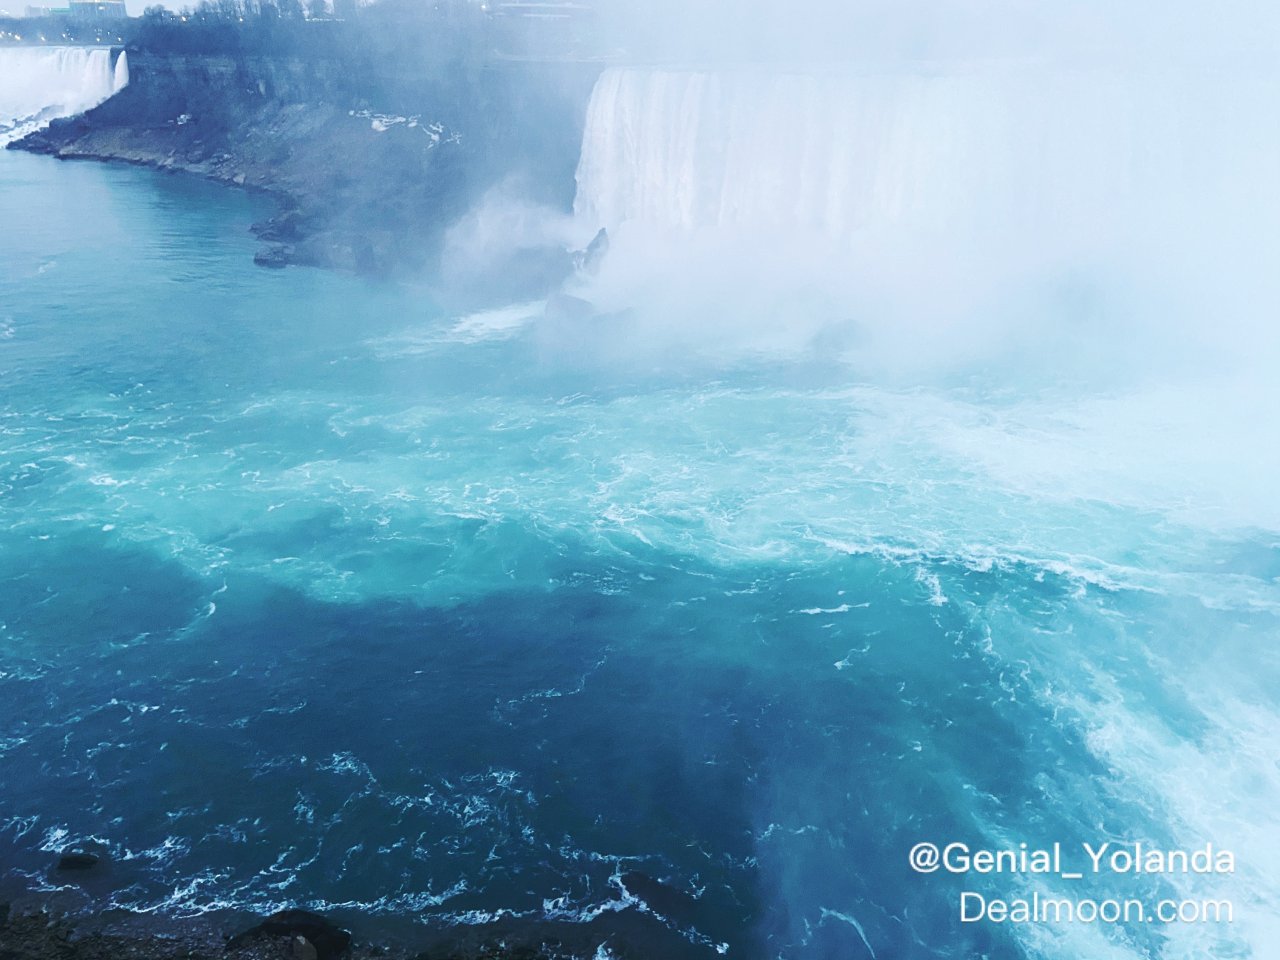 尼亚加拉大瀑布还得是加拿大才好看🇨🇦...